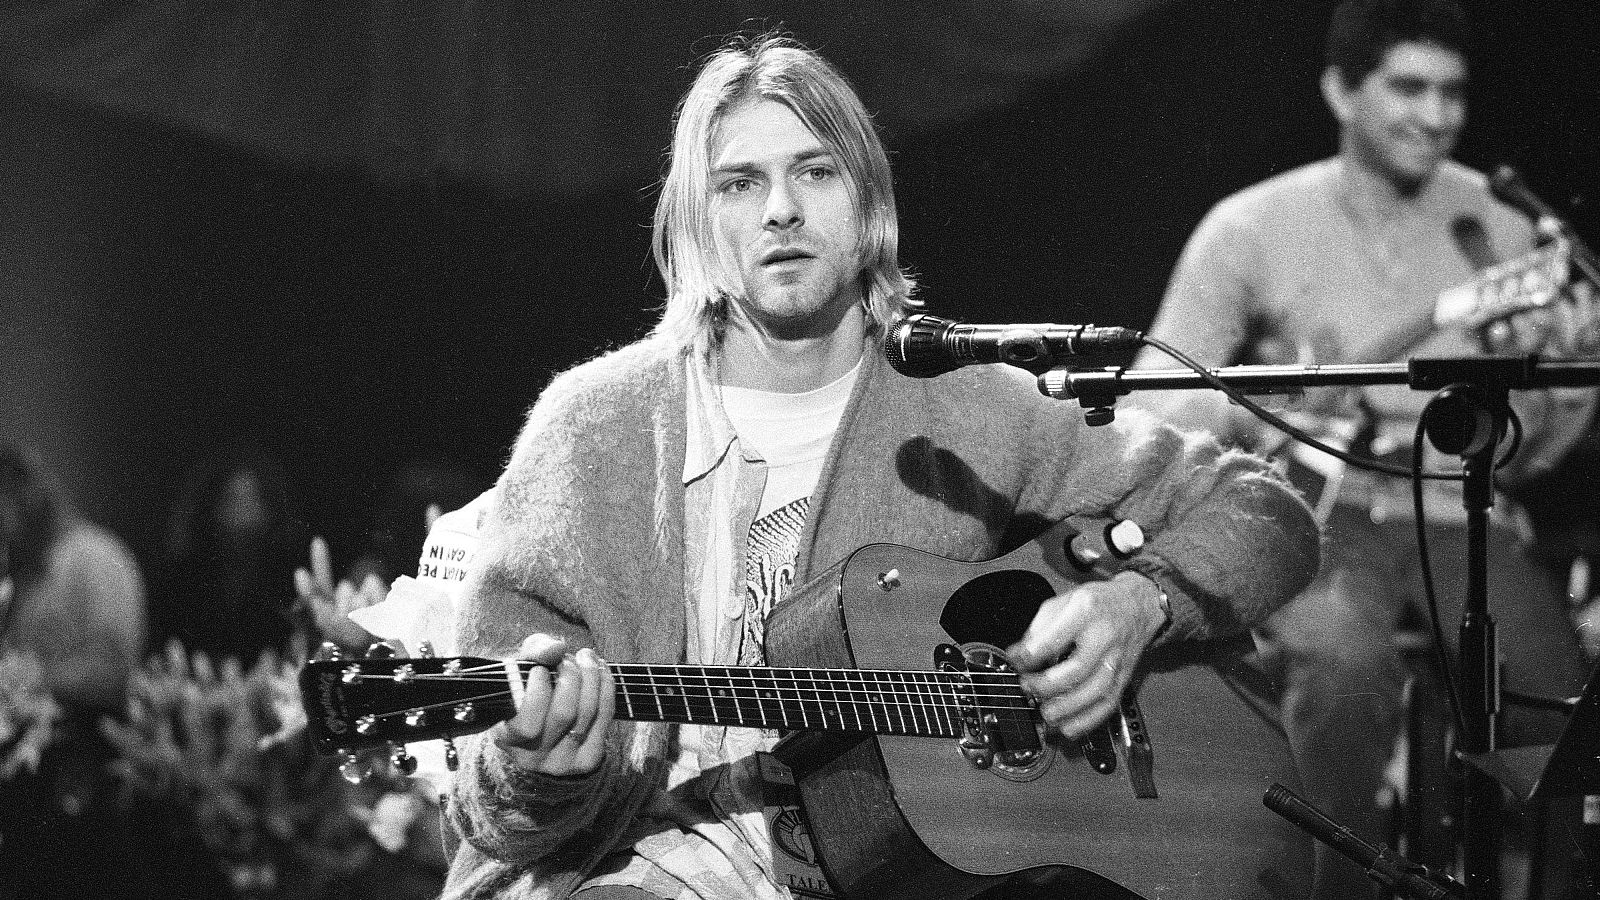 Se cumplen 30 años de la muerte de Kurt Cobain, líder de Nirvana